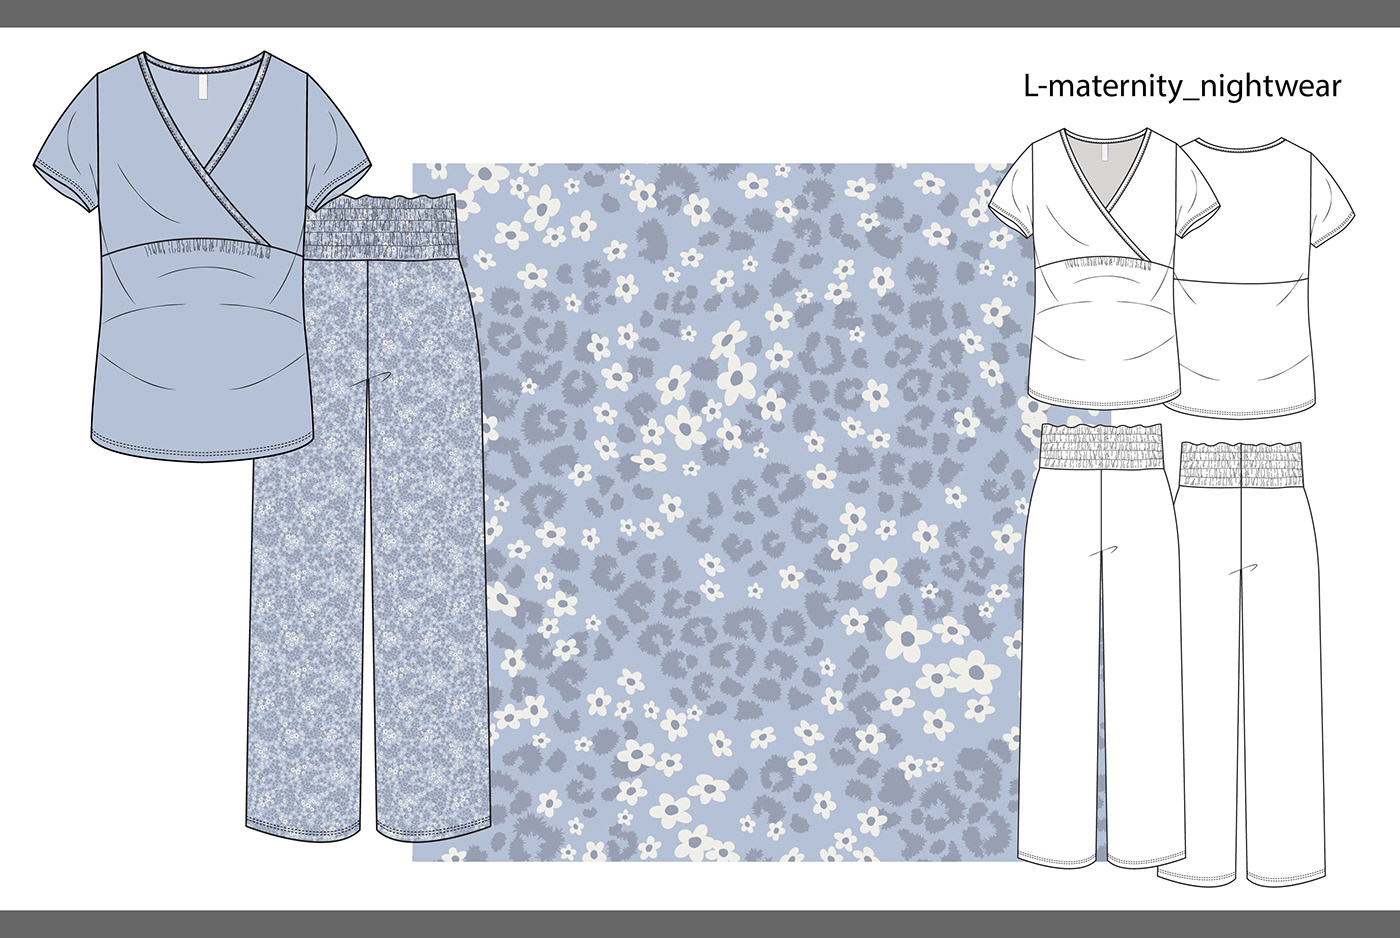 Nightwear sleepwear pyjama fashion design womenswear fashion illustration AOP print knitwear Clothing